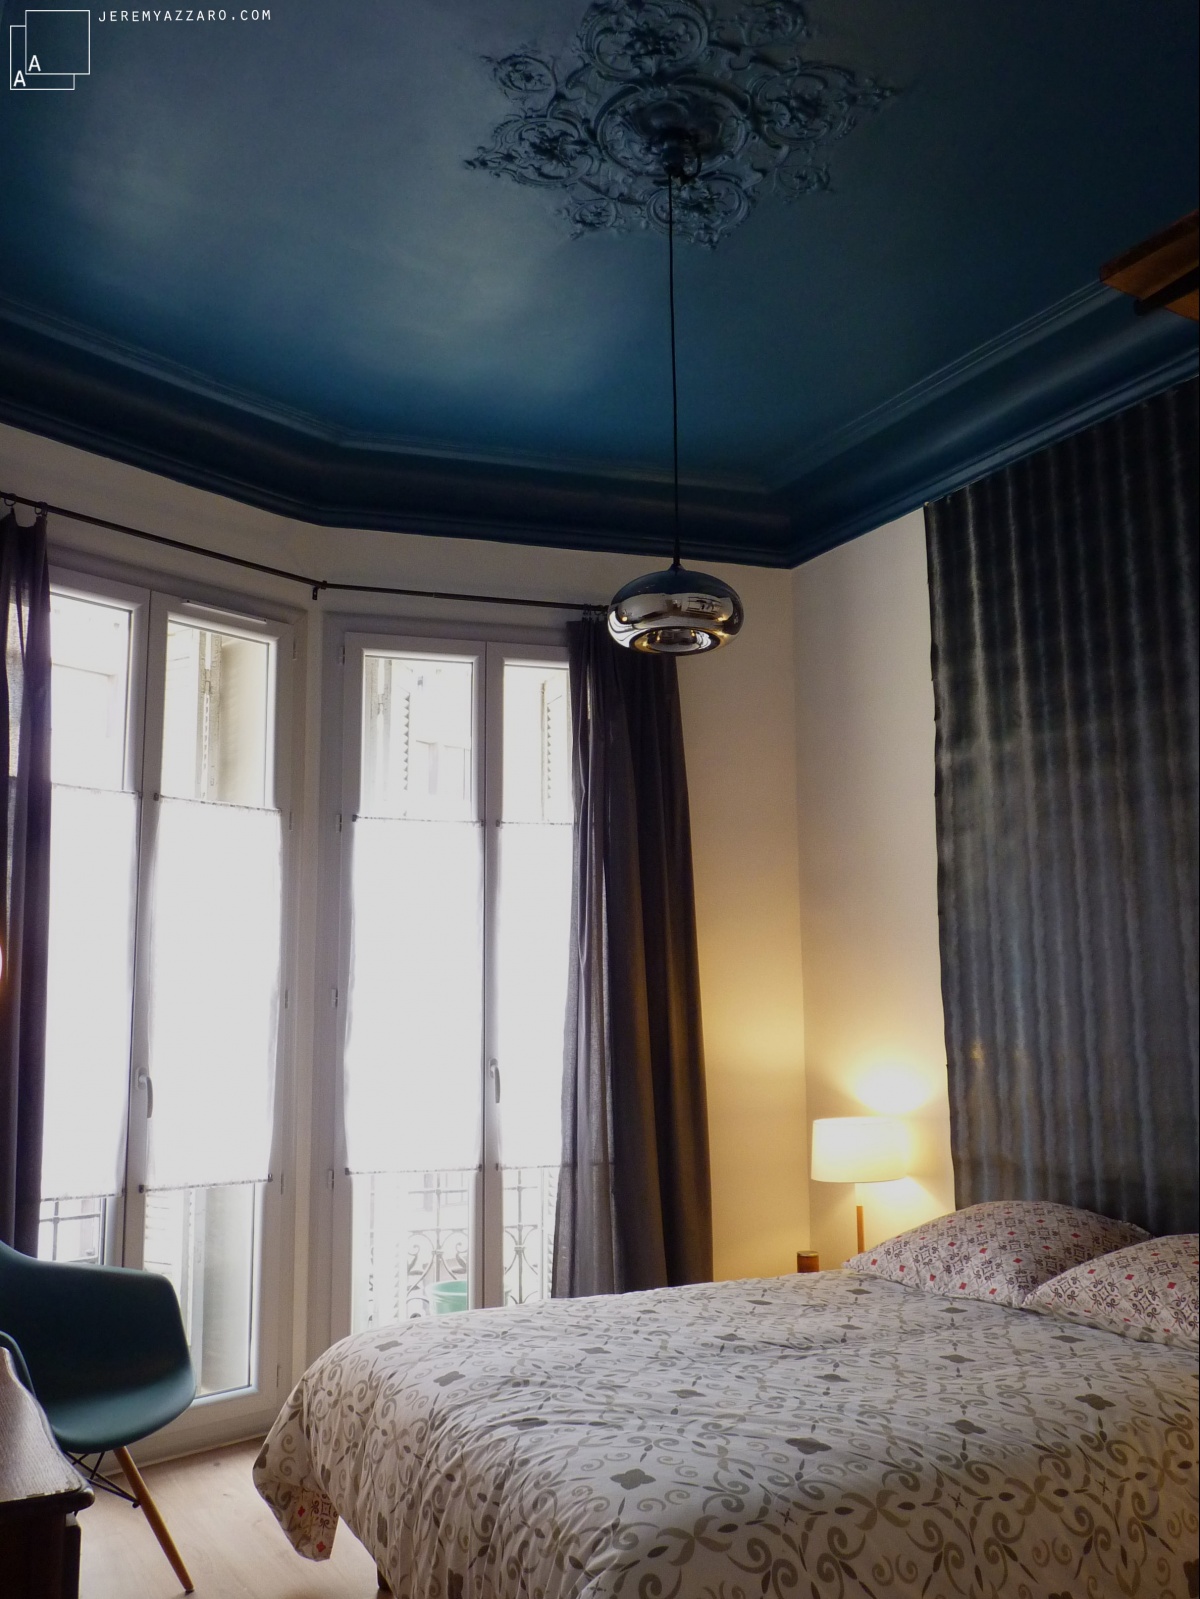 Rnovation dun appartement  couleurs palais  : moulure-bleu-bourgeois-appartement-marseille-jeremy-azzaro-architecte-min